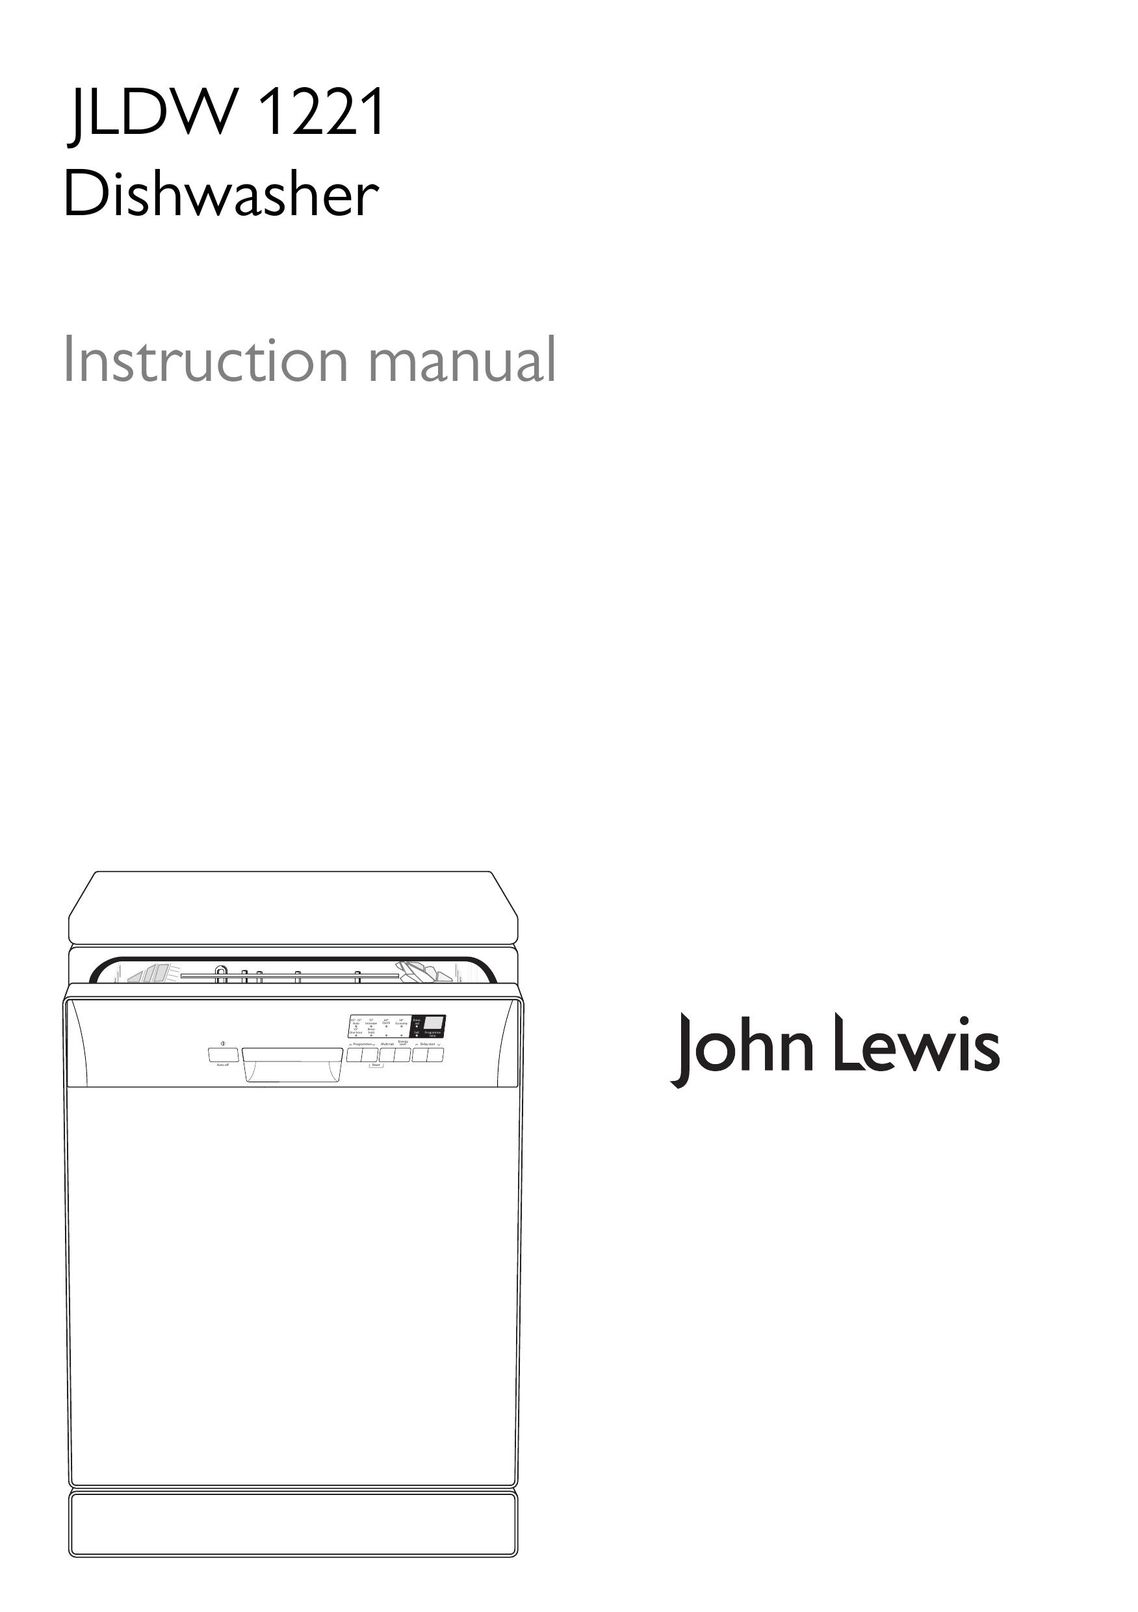 John Lewis JLDW 1221 Dishwasher User Manual